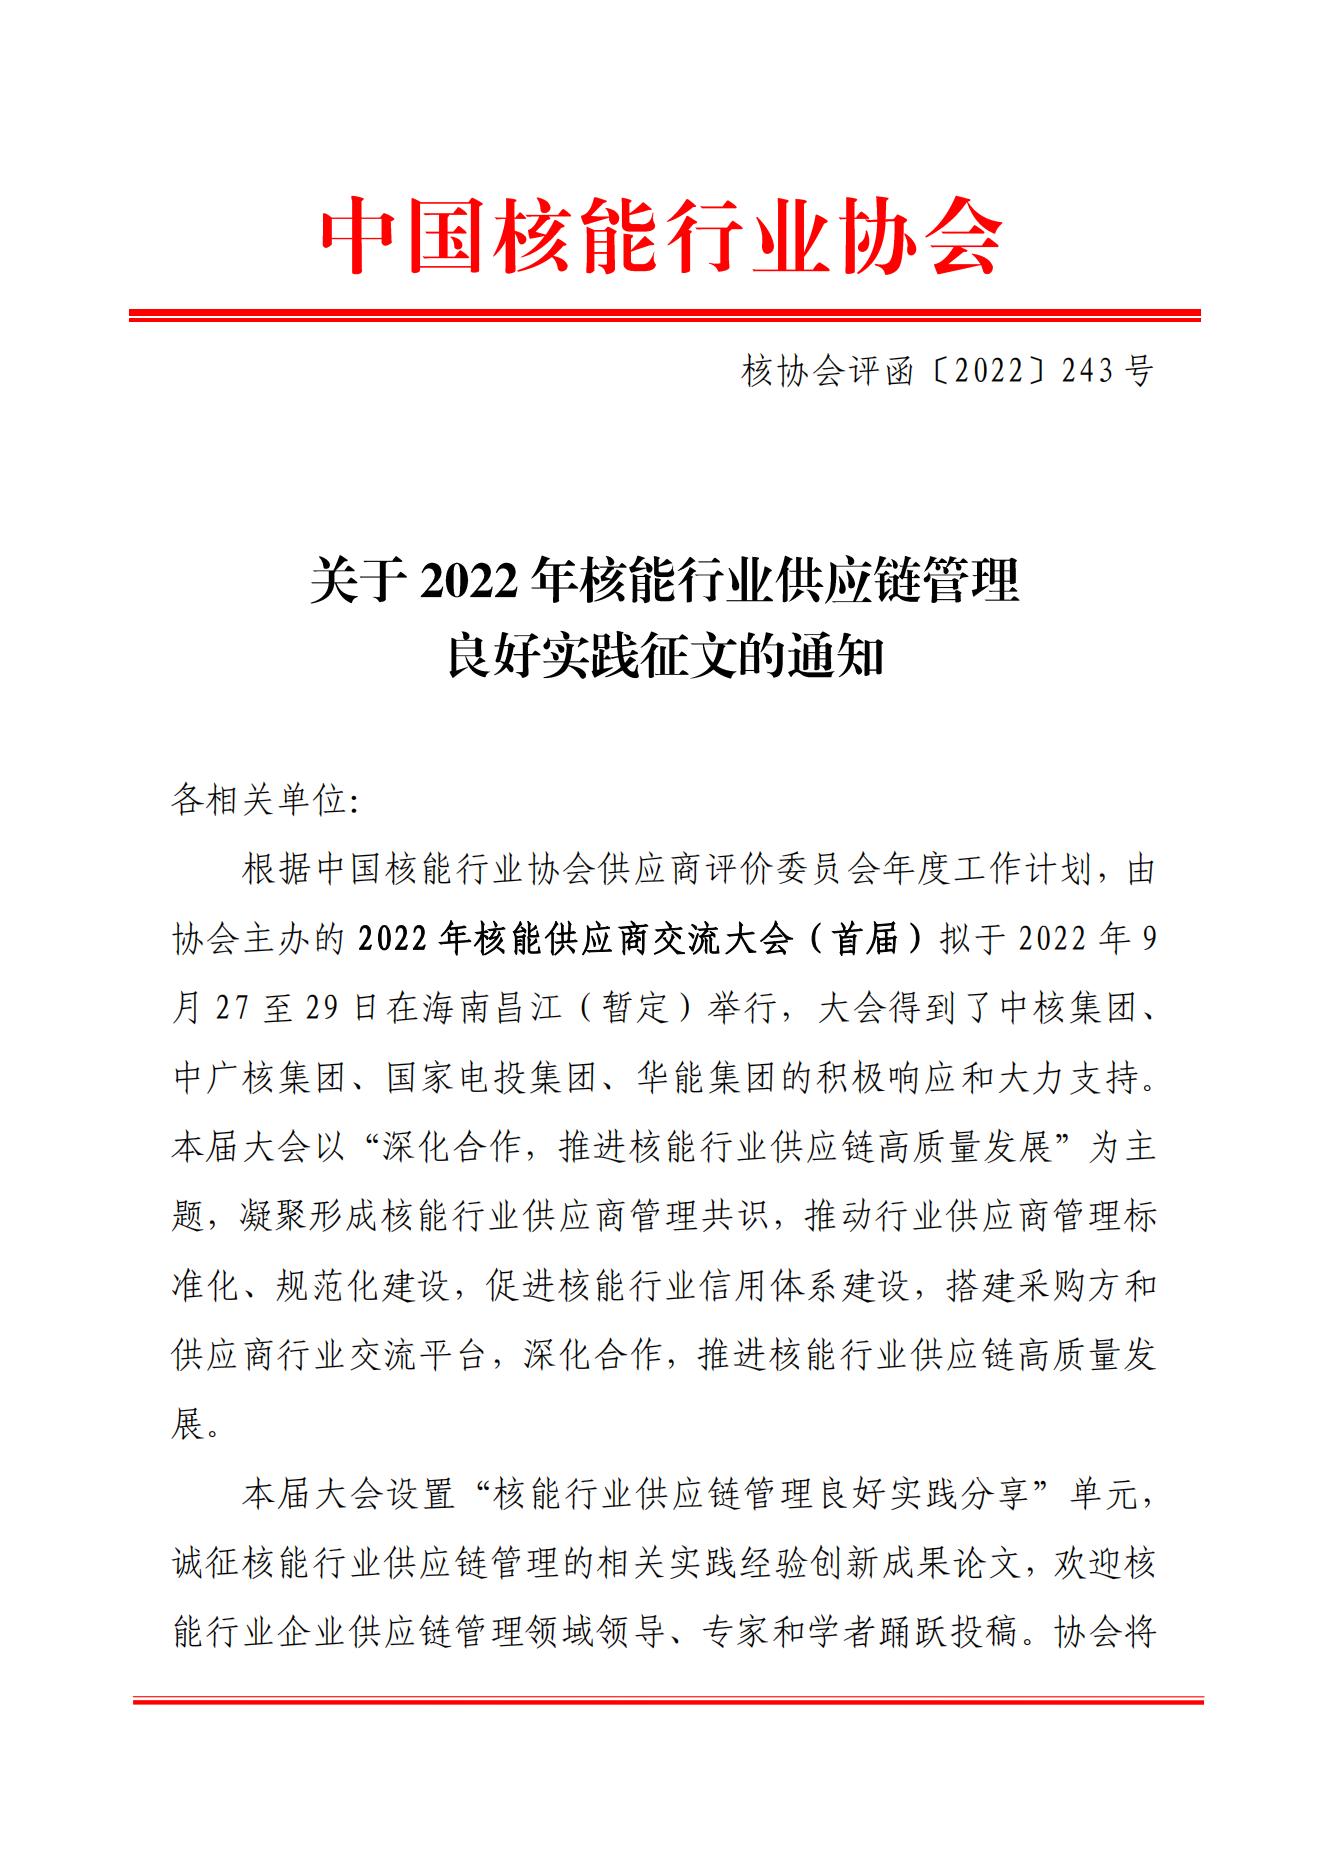 关于2022年核能行业供应链管理良好实践征文的通知核协会评函【2022】243号_00.jpg